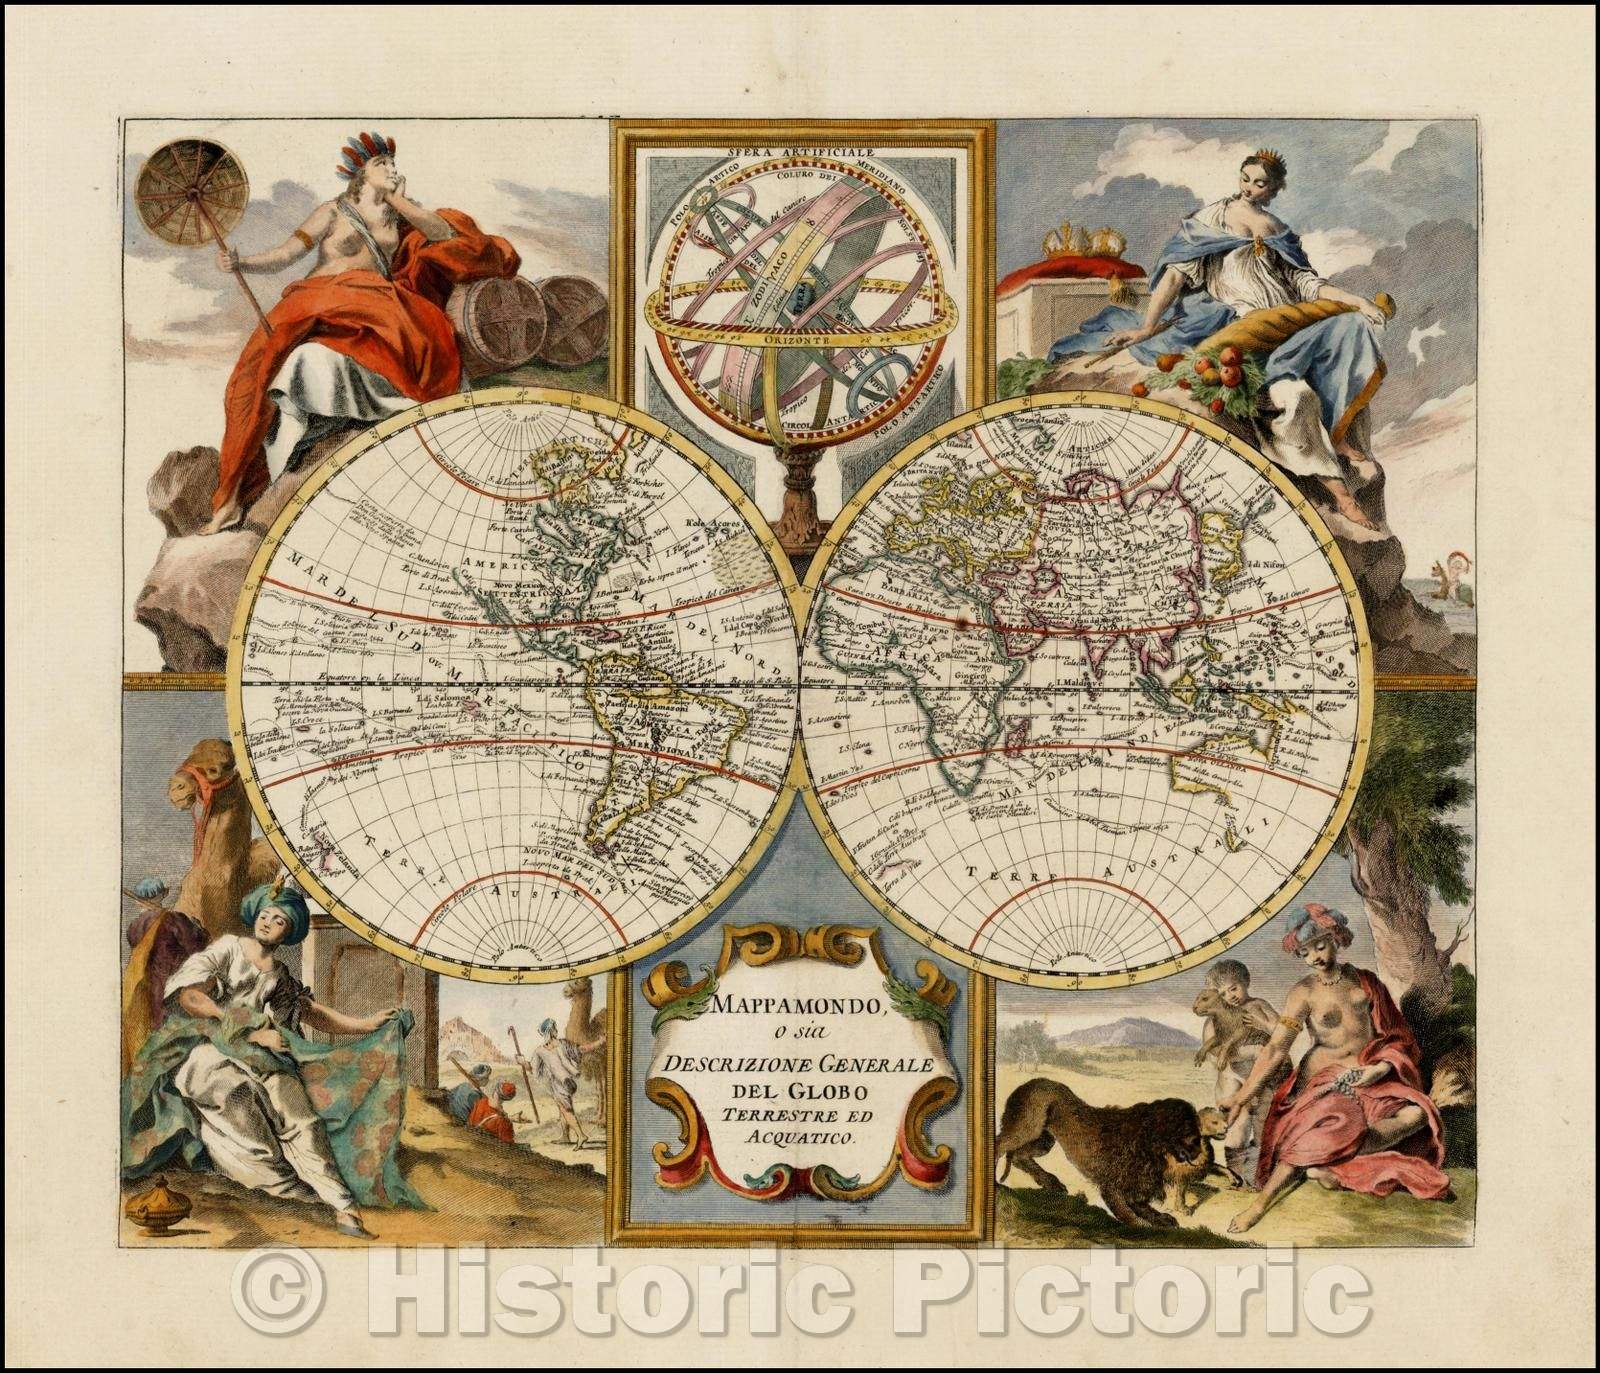 Historic Map - Mappamondo o sia Descrizione Generale Del Globo Terrest -  Historic Pictoric